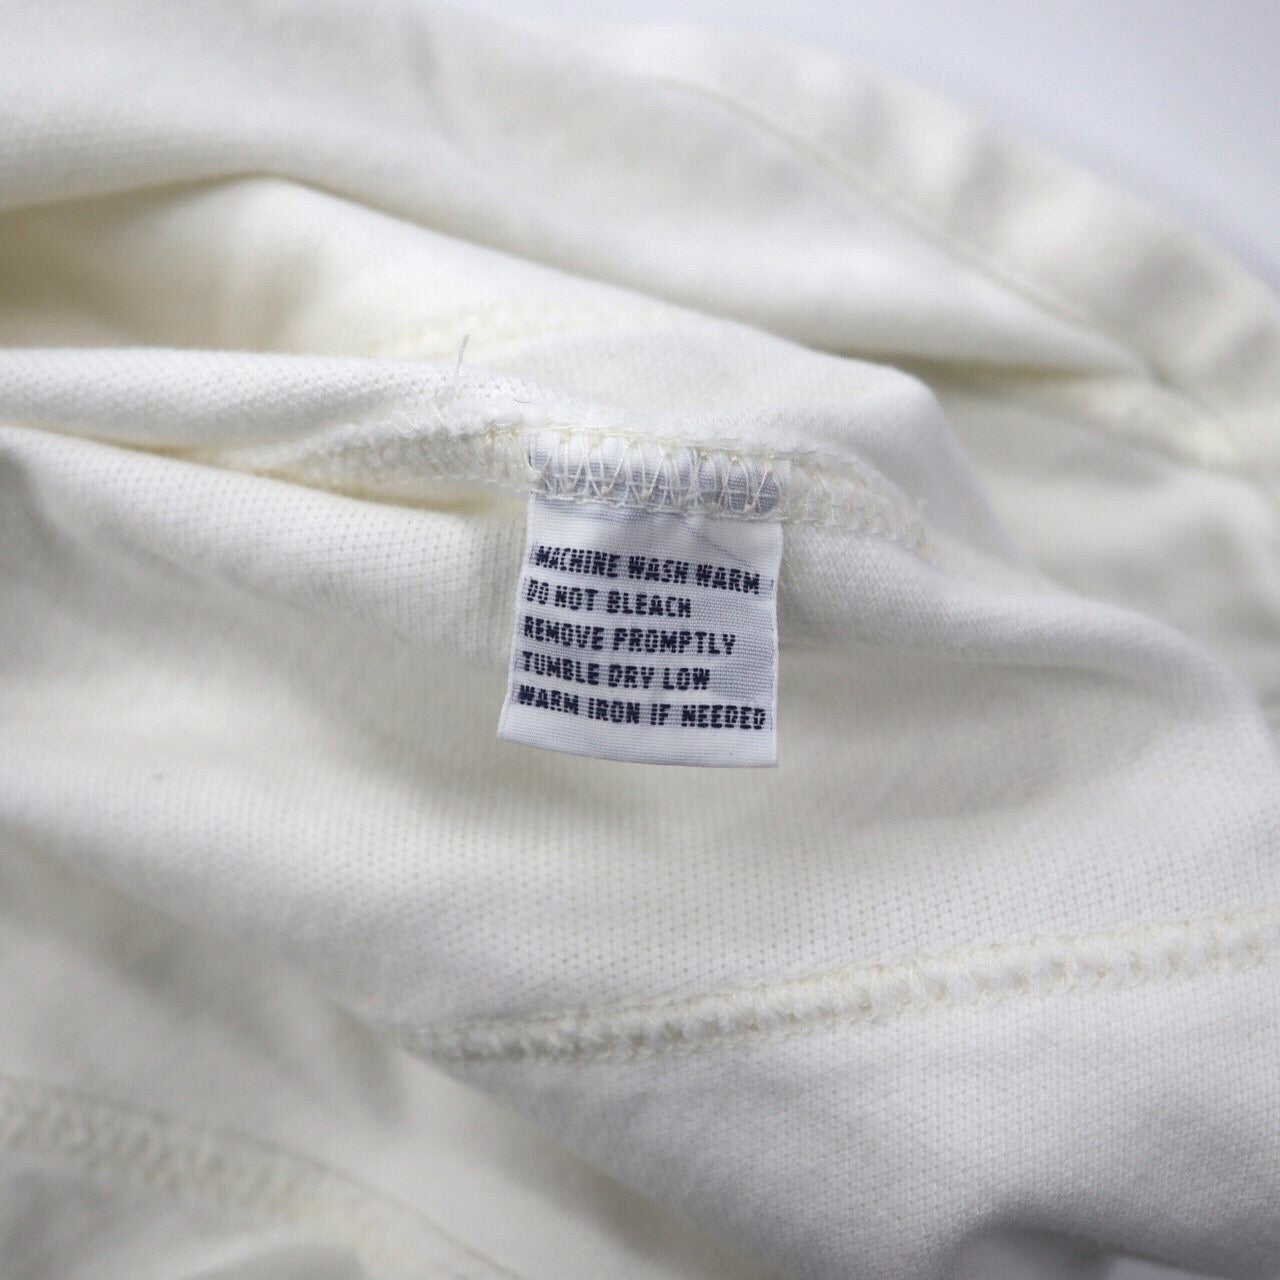 Polo by Ralph Lauren ポロシャツ S ホワイト コットン CUSTOM FIT ナンバリング ビッグポニー刺繍